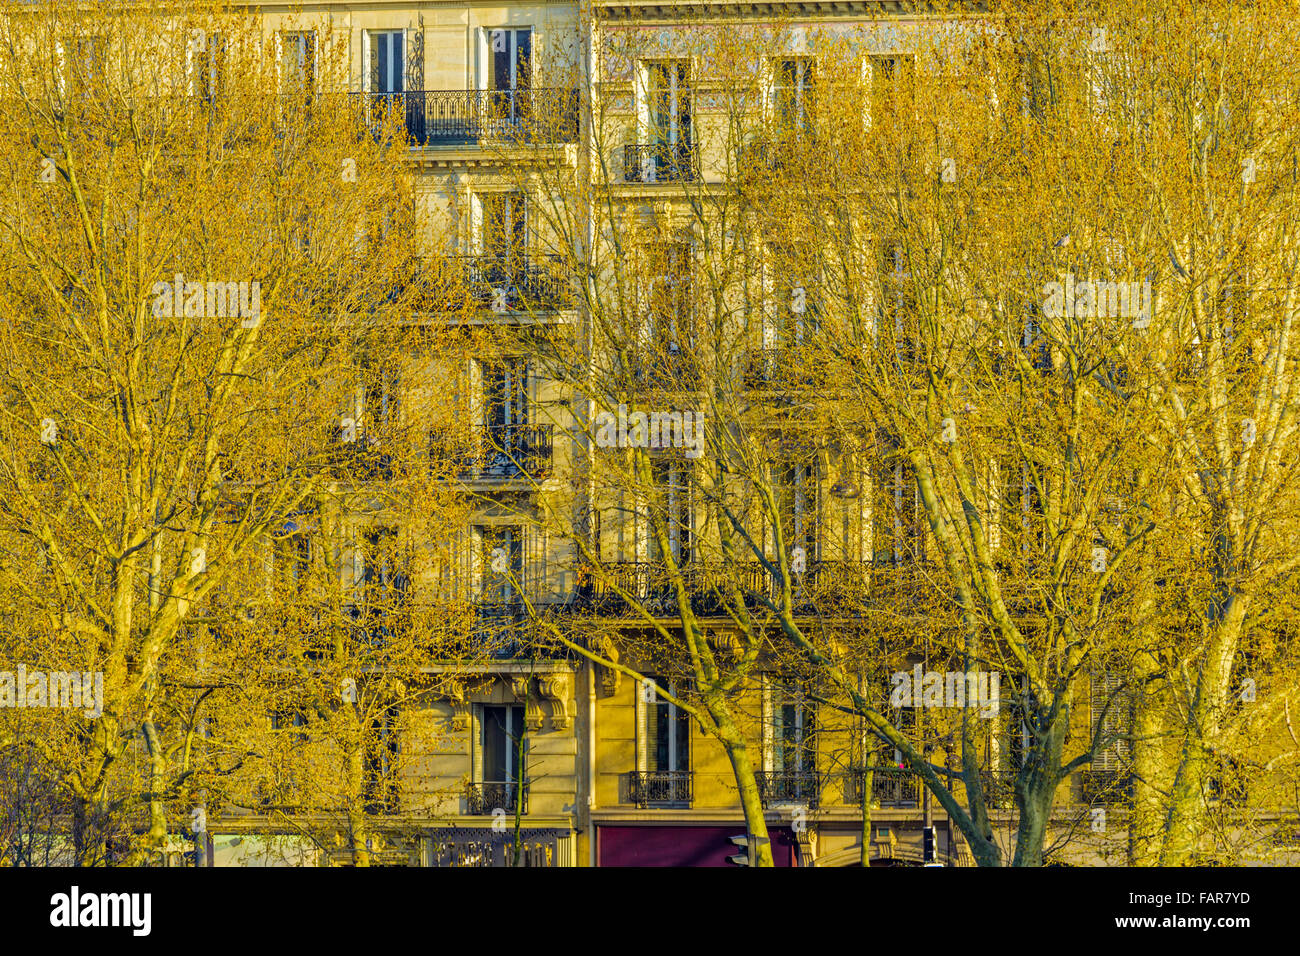 Appartements le long de l'île l'Île Saint-Louis dans la Seine à Paris Banque D'Images